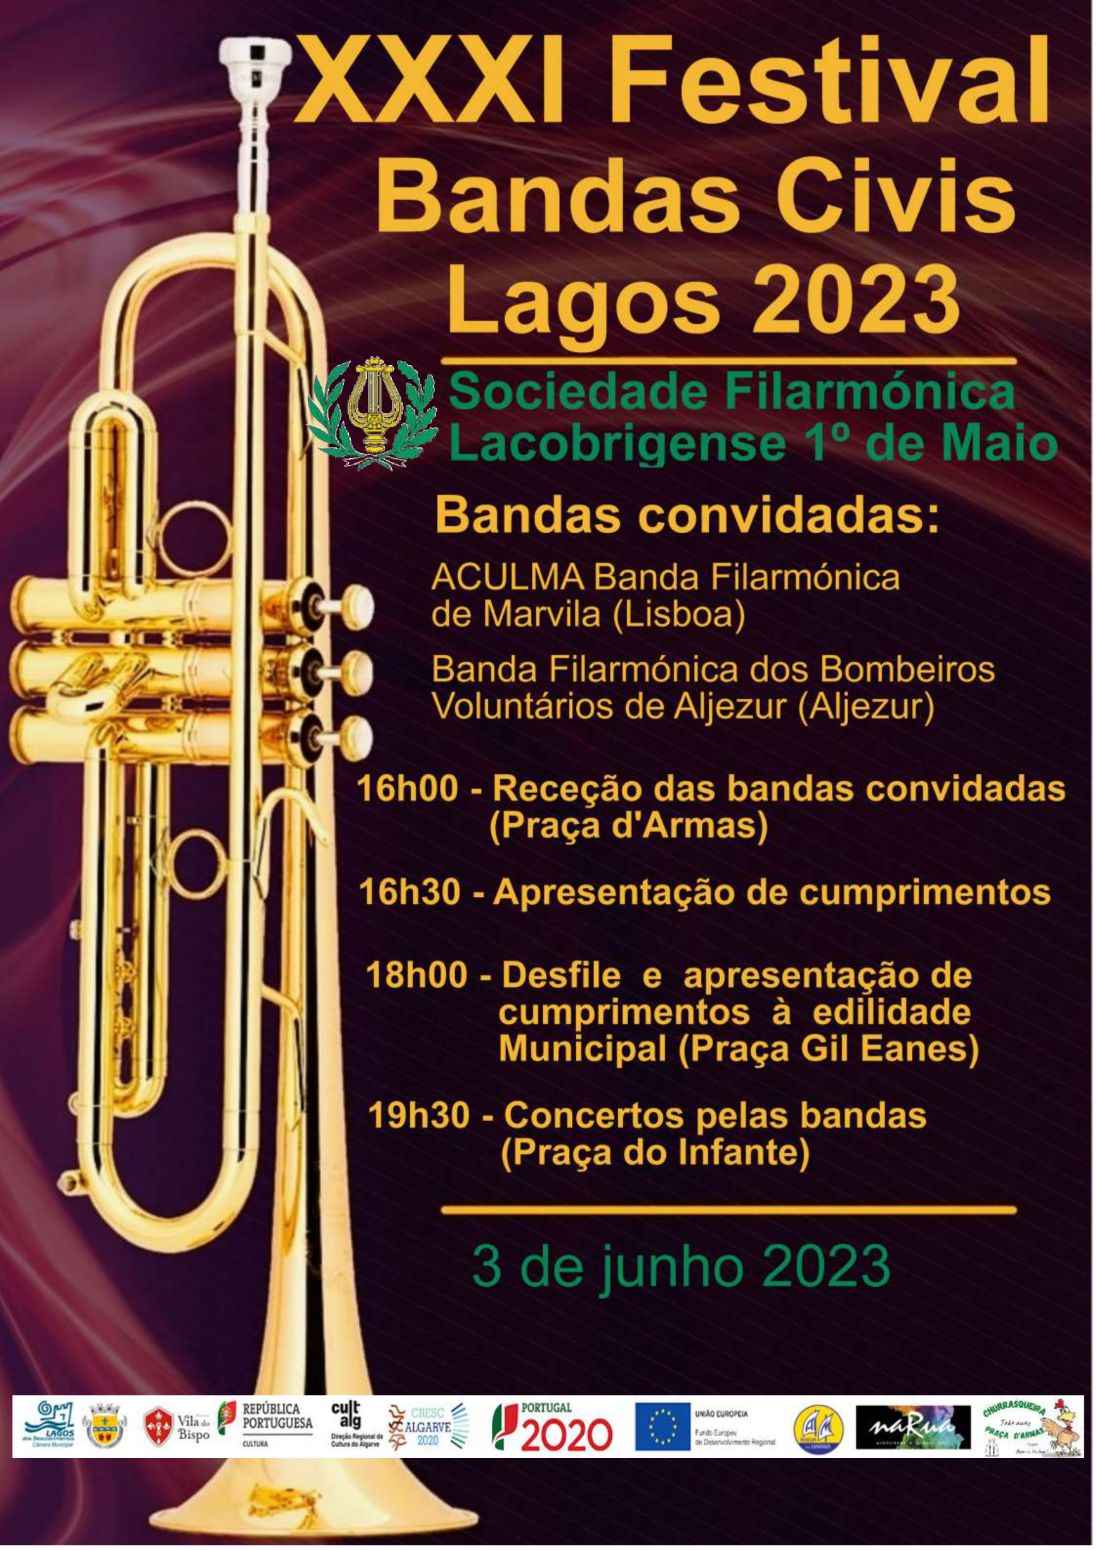 XXXI Festival de Bandas Civis Lagos 2023